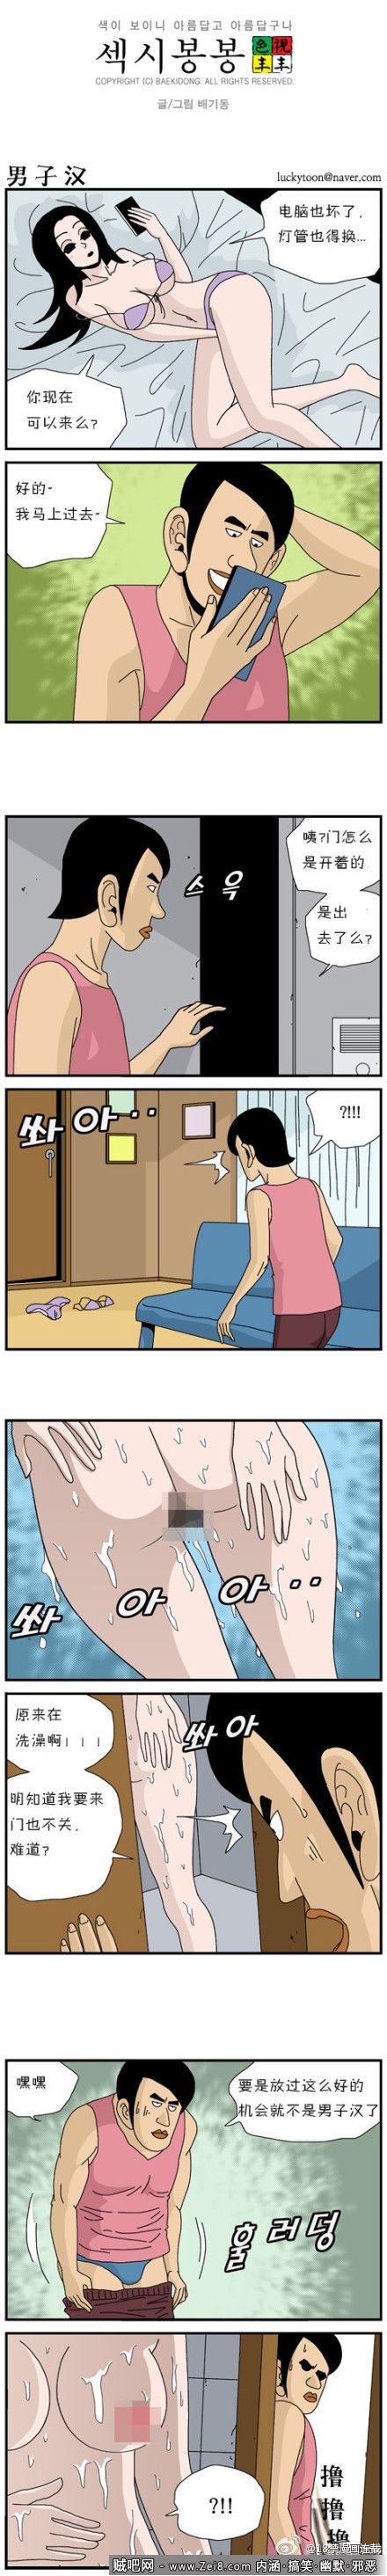 [韩国女汉子色系漫画]：资深屌丝